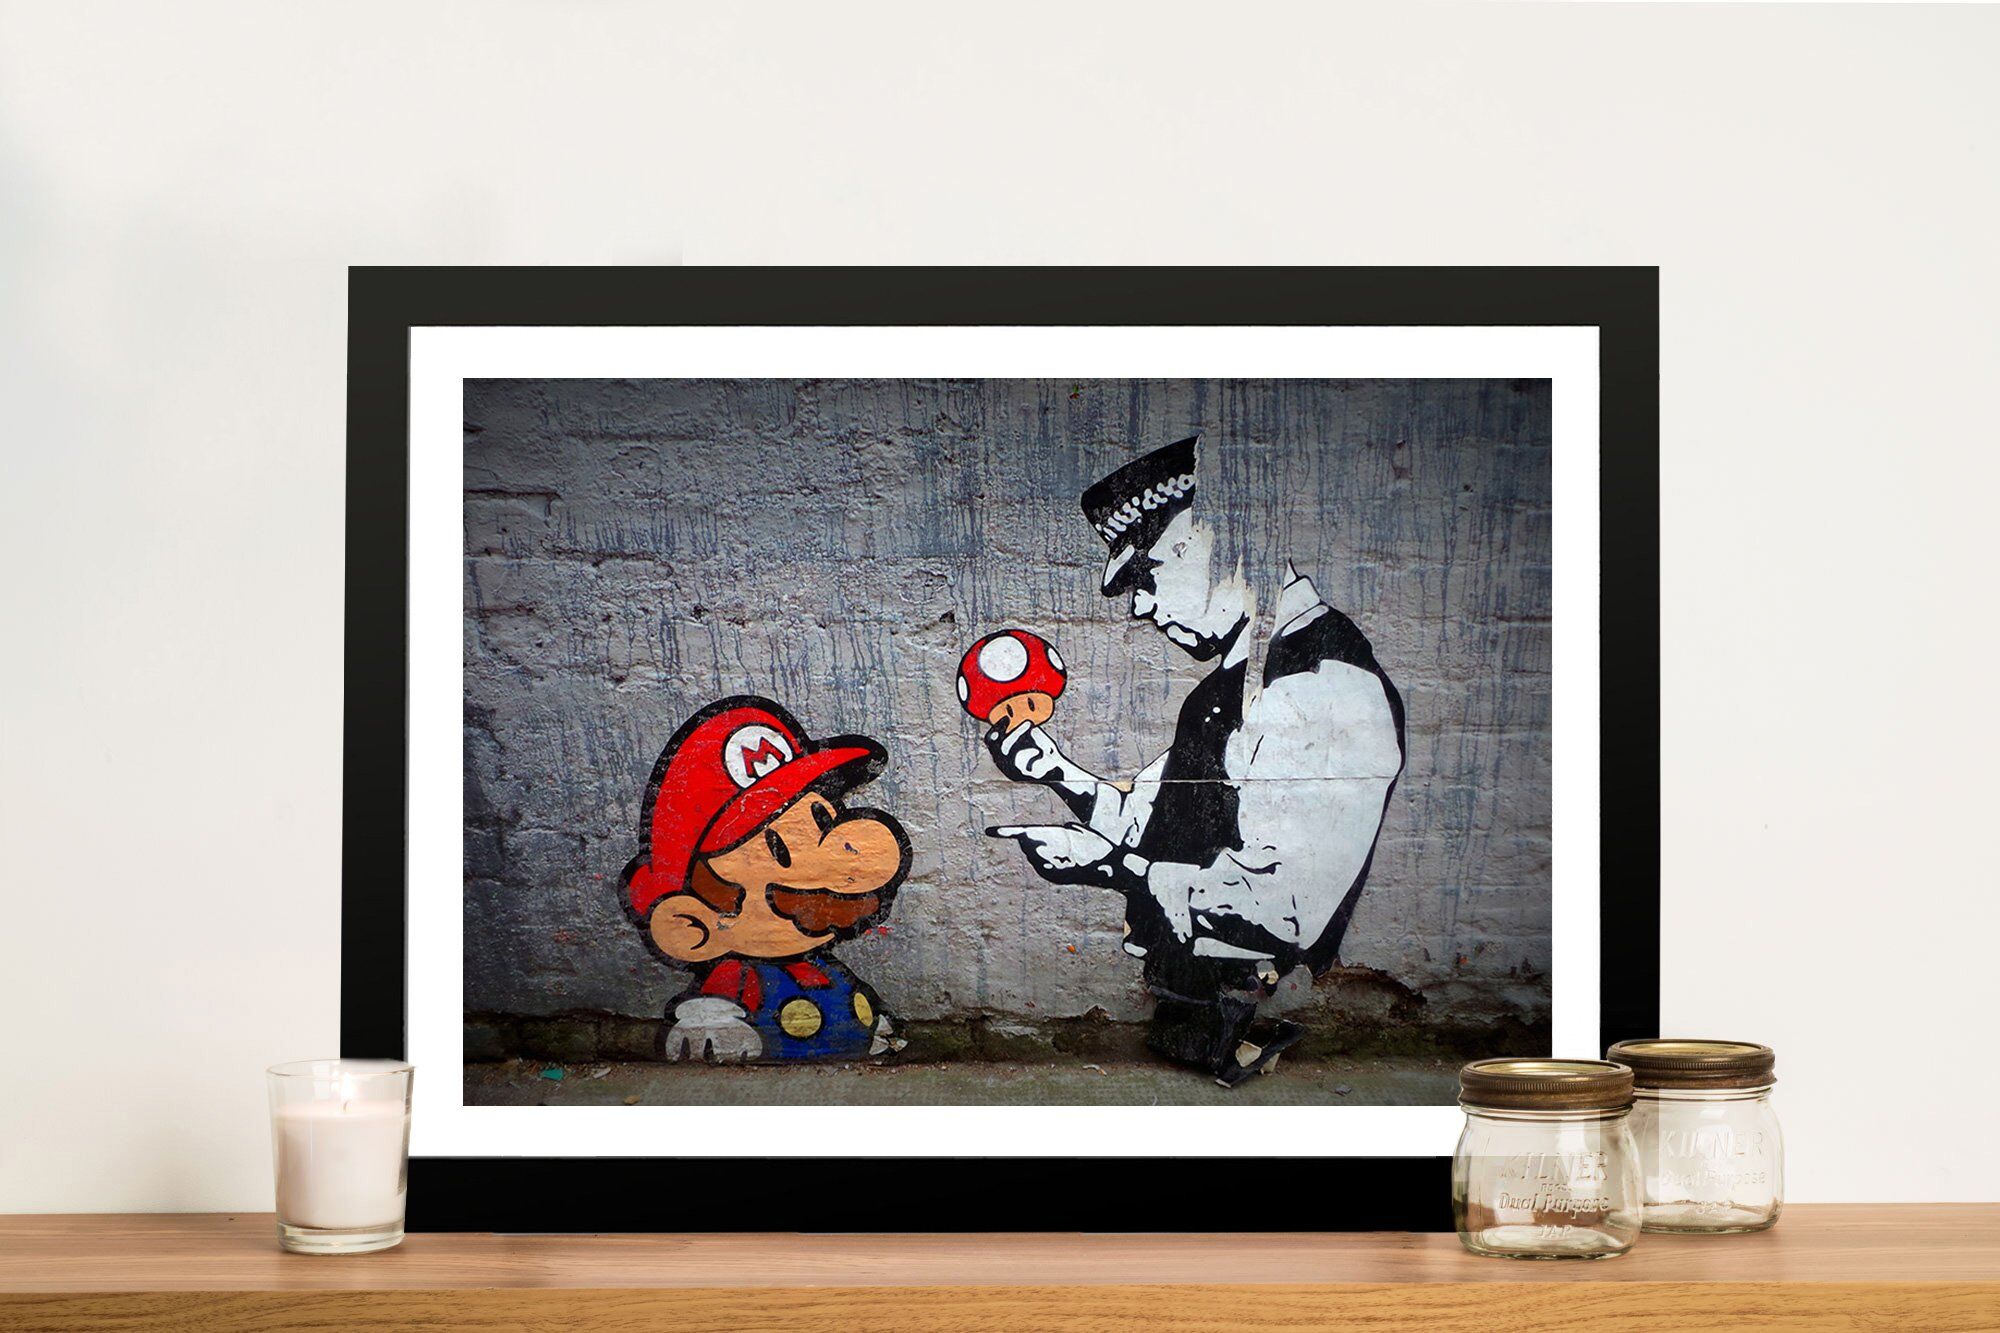 Mario's Mushrooms Graffiti Wall Art